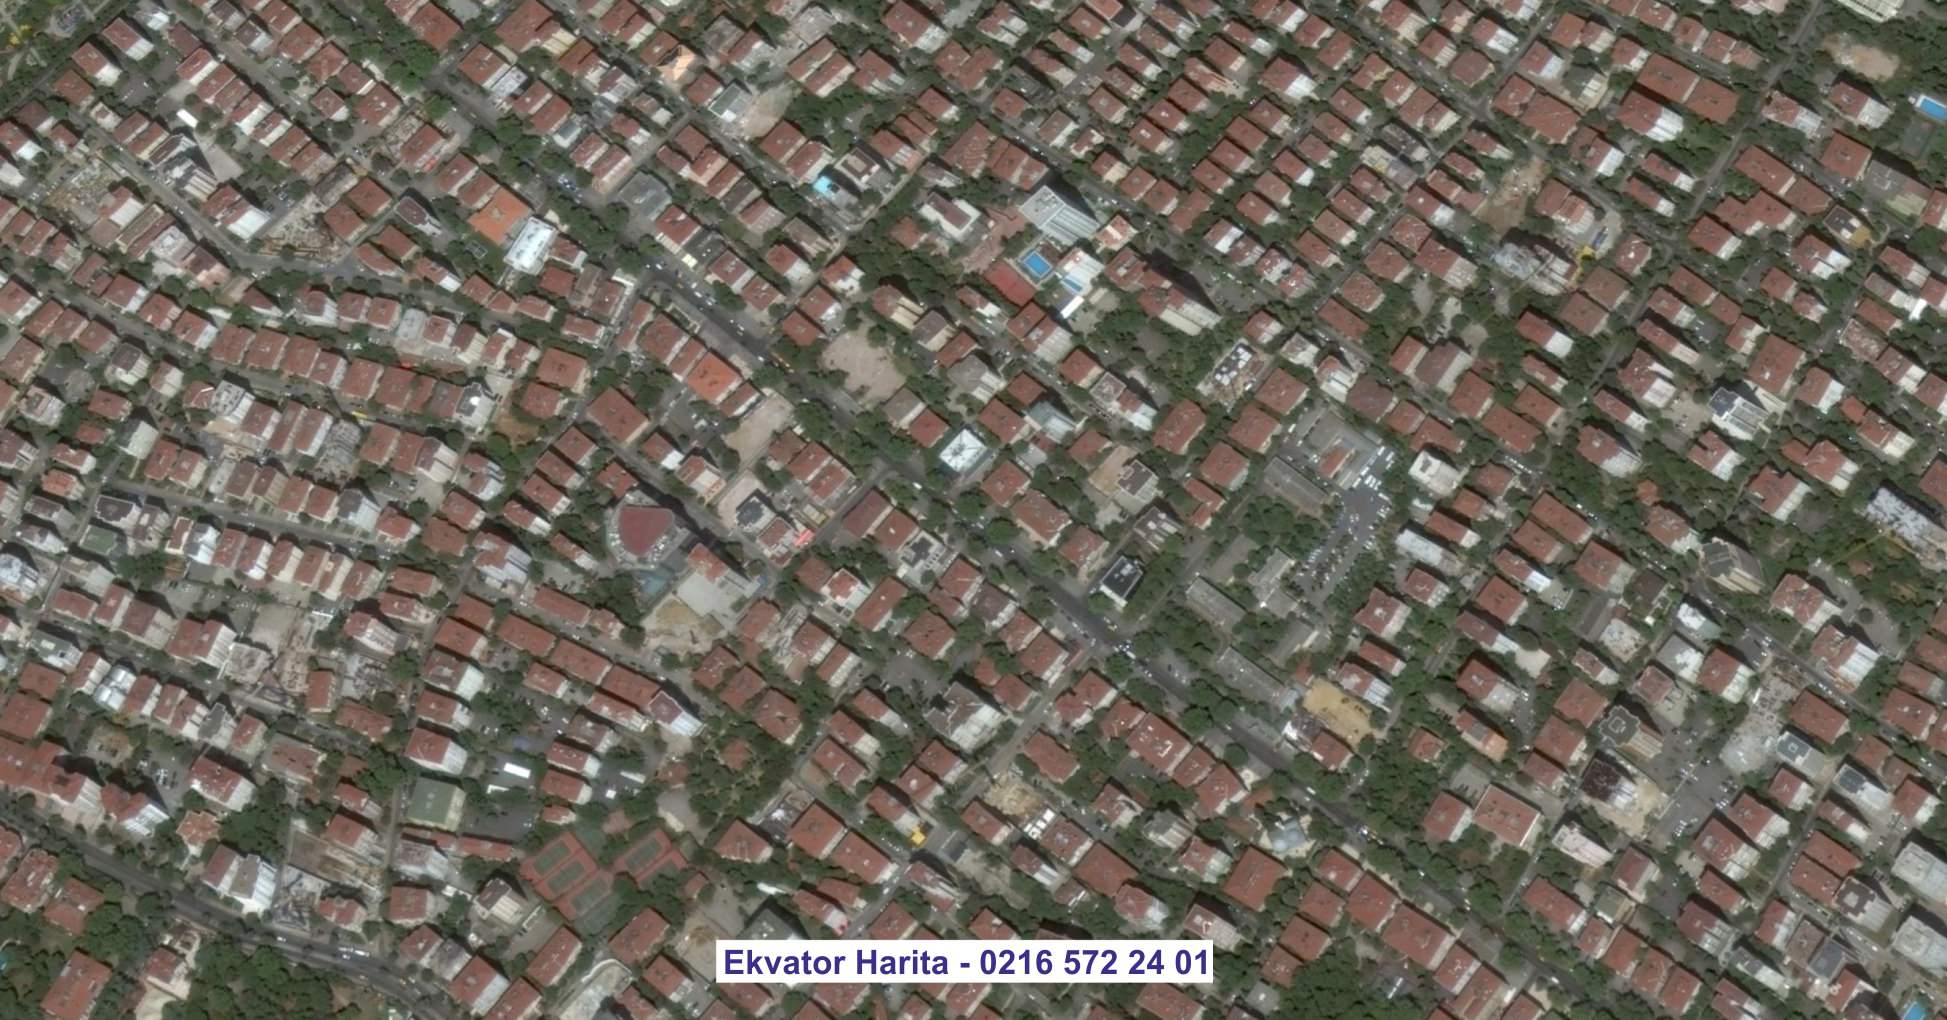 Dikili Uydu Görüntüsü Örnek Fotoğrafı